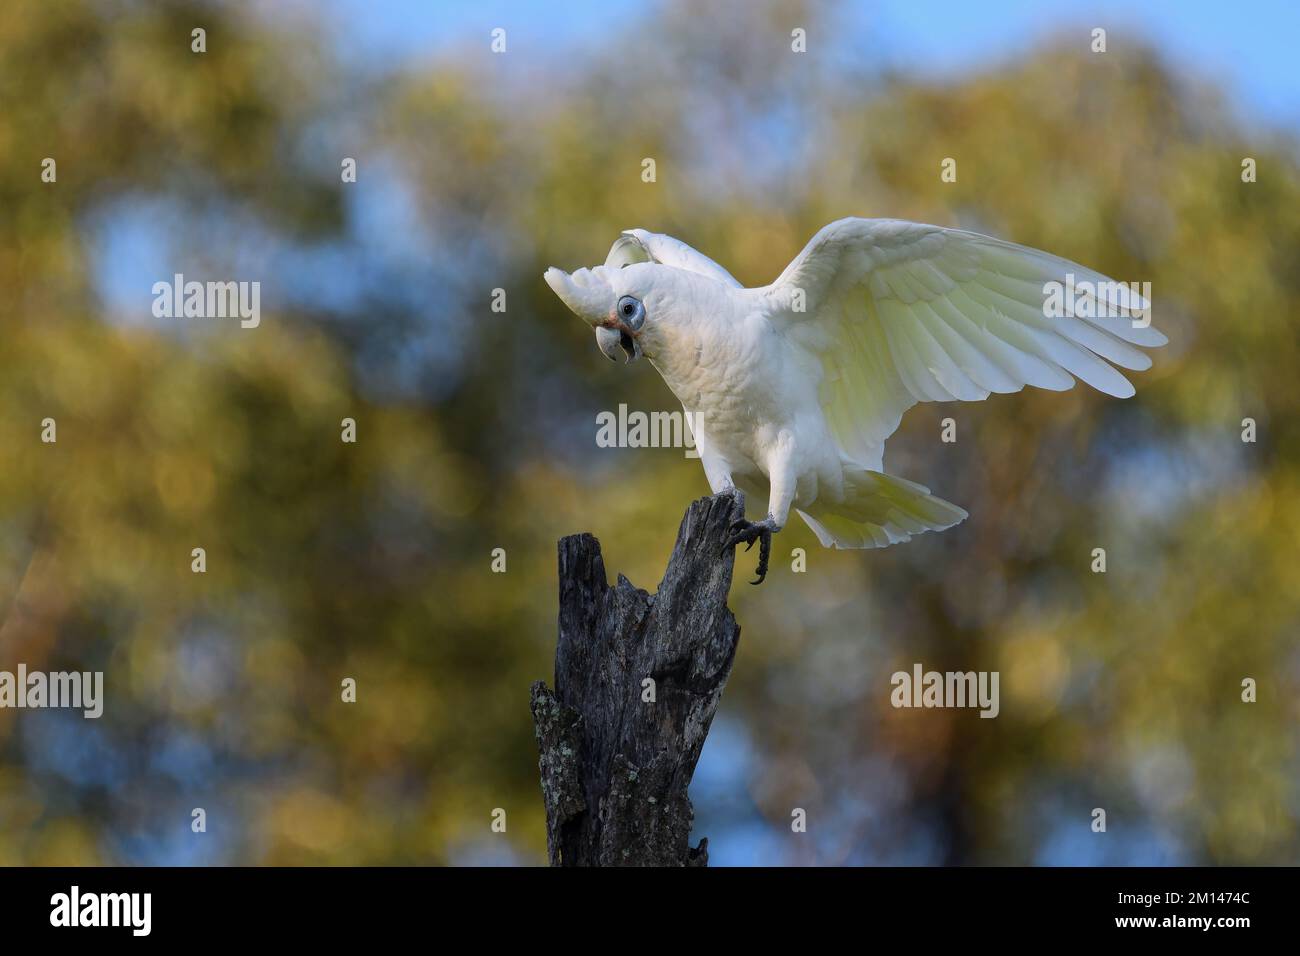 Un petit oiseau australien adulte de Corella -Cacatua sanguinea- perché sur un vieux bosse d'arbre qui brûle ses ailes dans la colère protégeant son territoire Banque D'Images